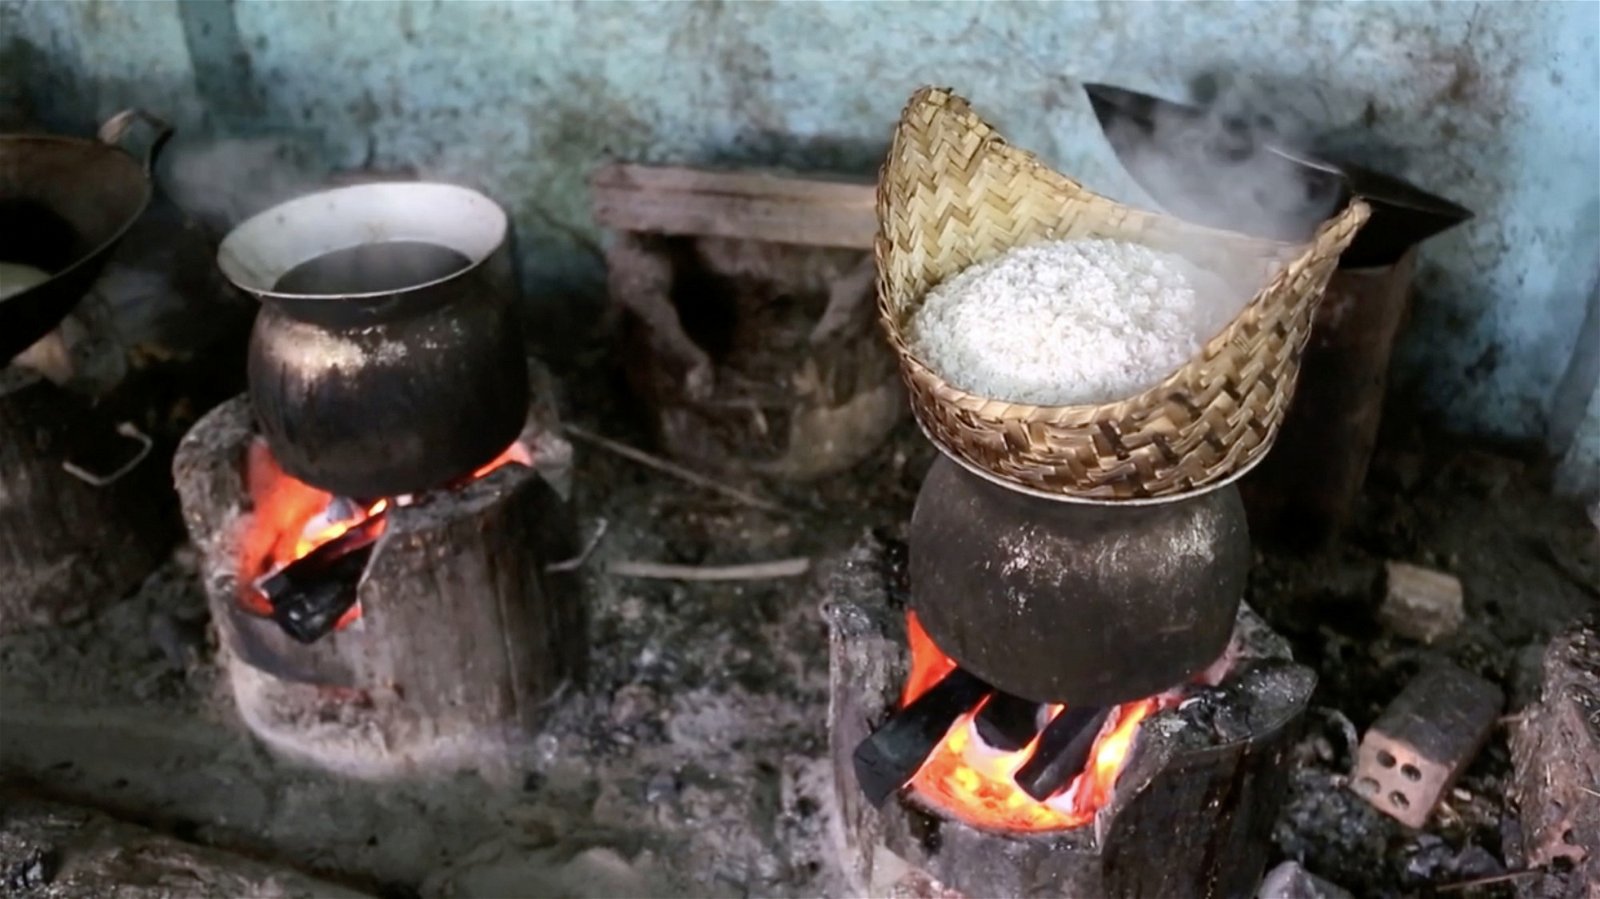 阿姨仍使用烧材生火的方式 烹煮制作糕点的材料。